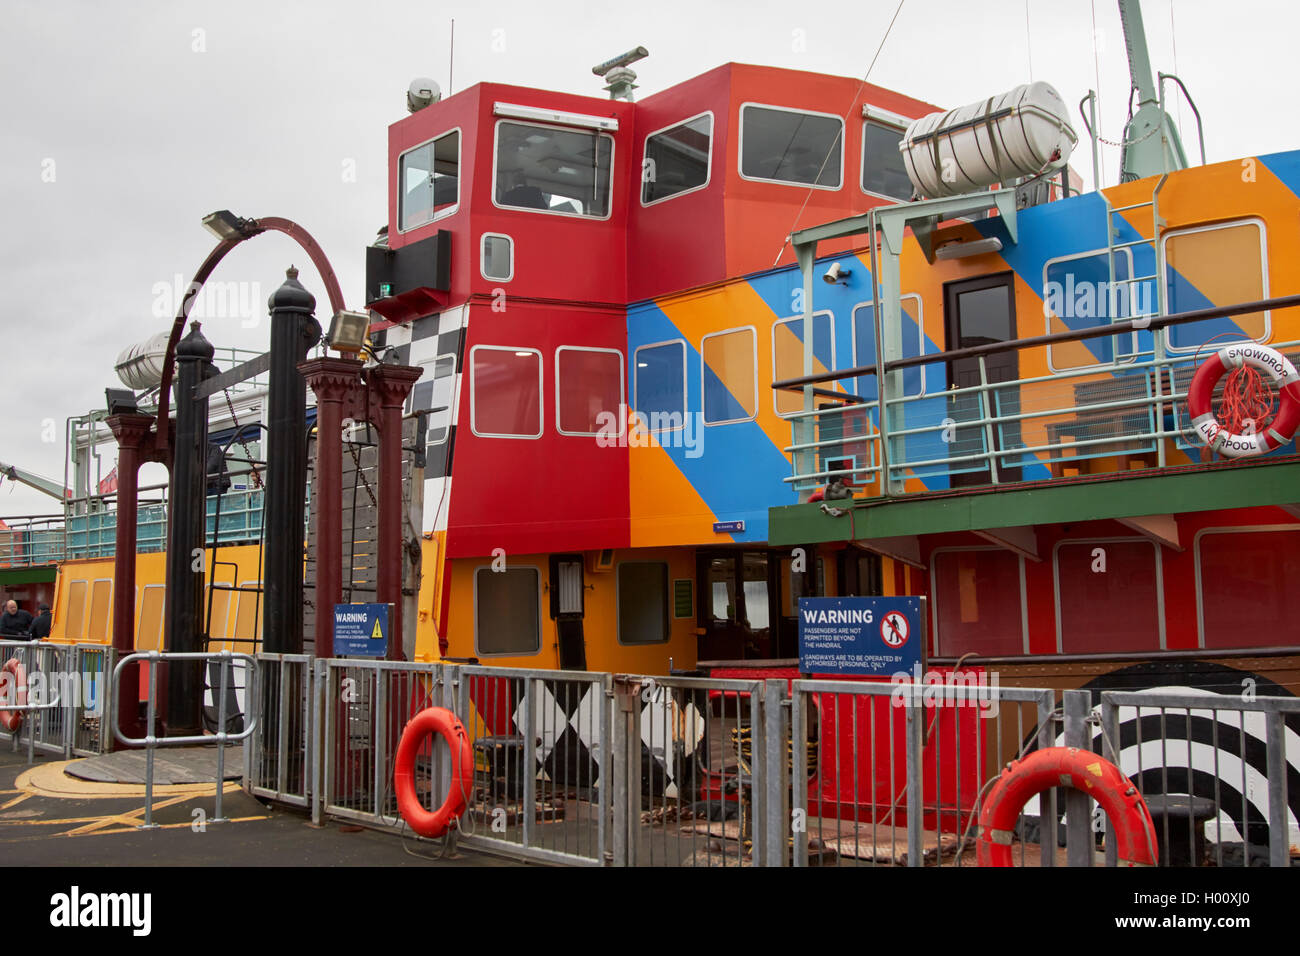 Mersey Fähre Schneeglöckchen ferry in Razzle dazzle Weltkrieg eine störende Farbe Muster Liverpool Merseyside UK Stockfoto